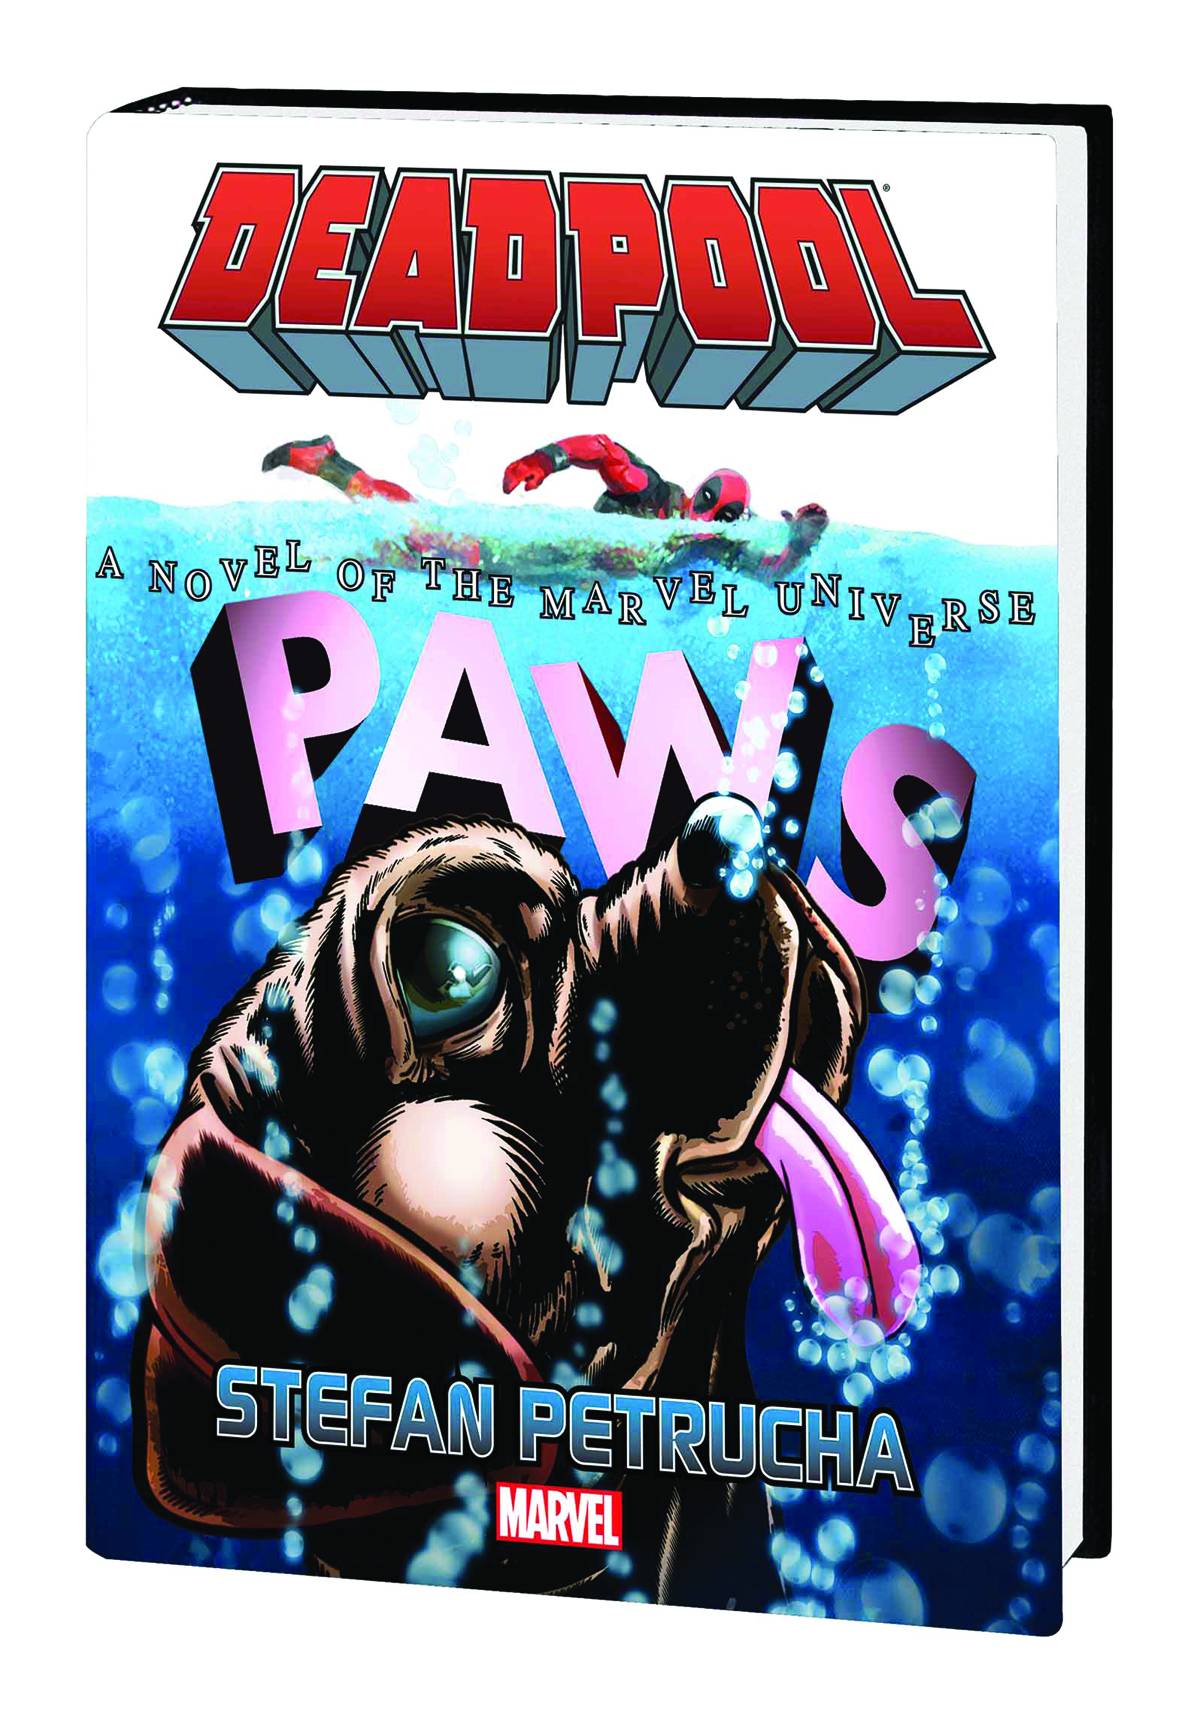 Deadpool Paws Prose Novel Hardcover